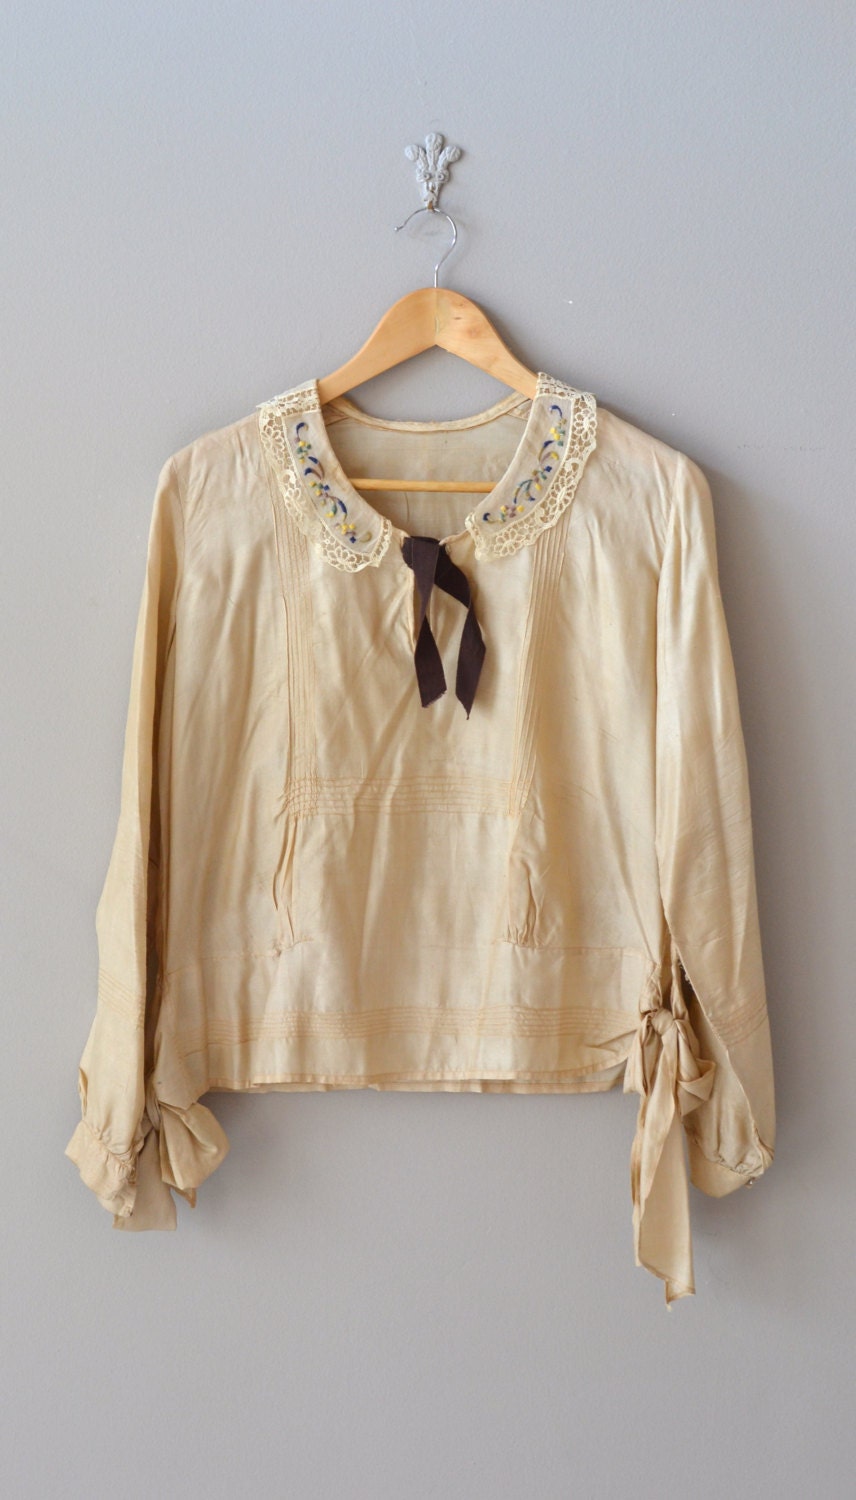 silk 1920s blouse / vintage 20s blouse / Vera Violette blouse